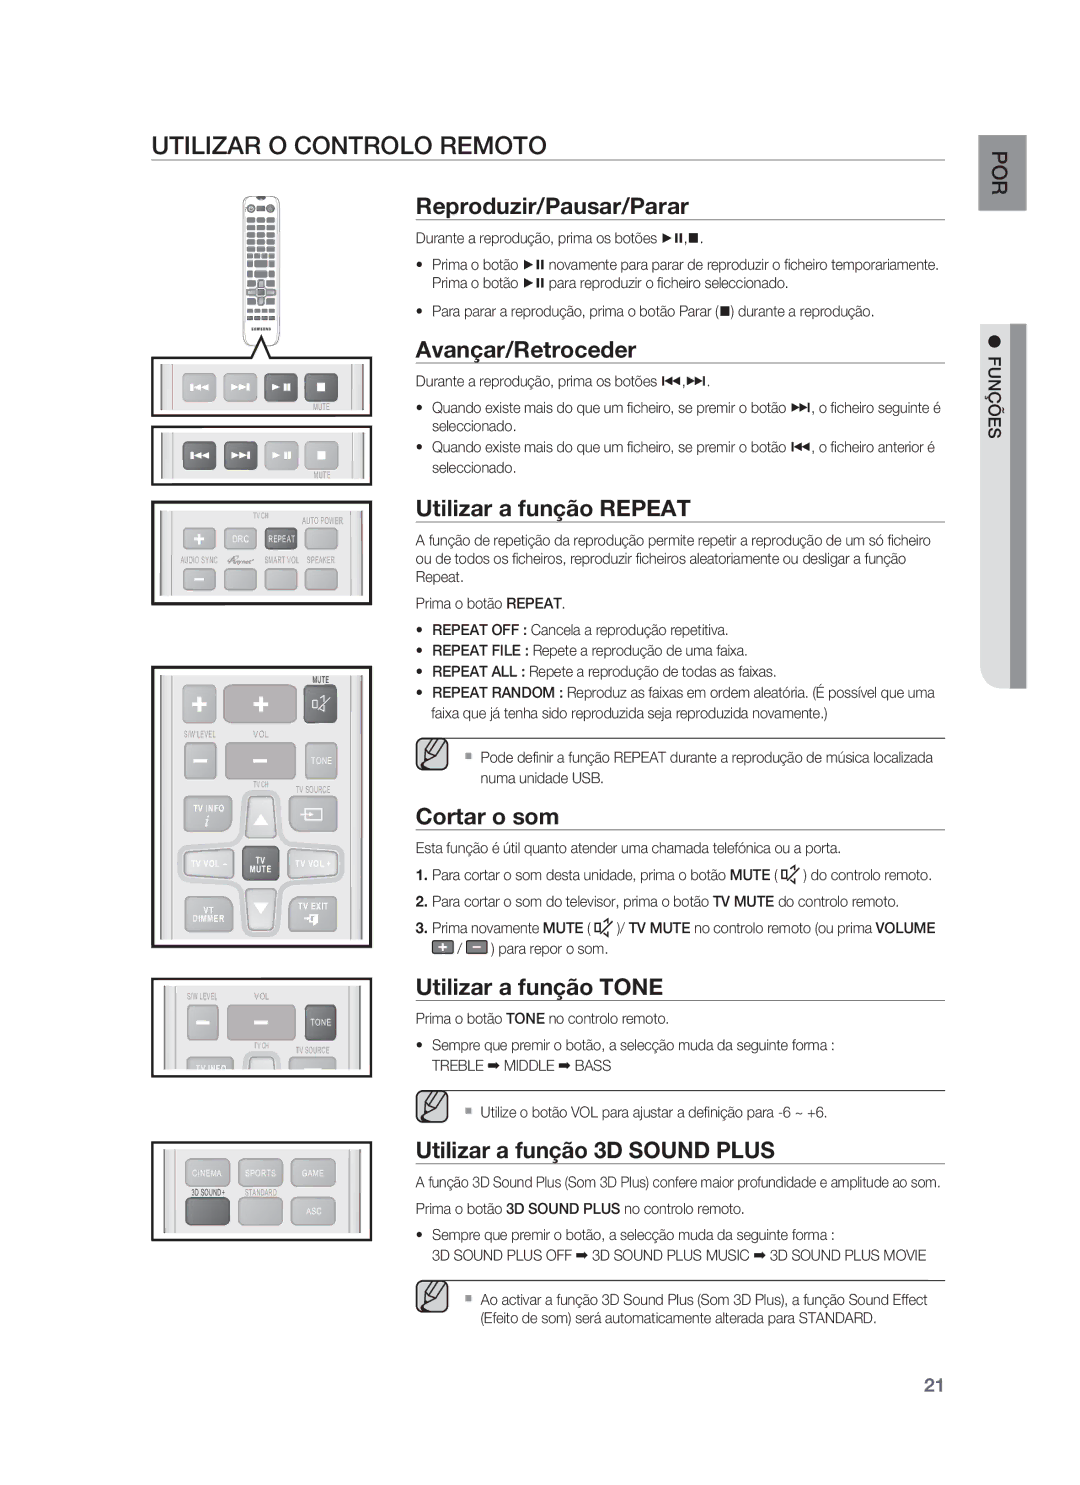 Samsung HW-F850/ZF manual Utilizar O Controlo Remoto 